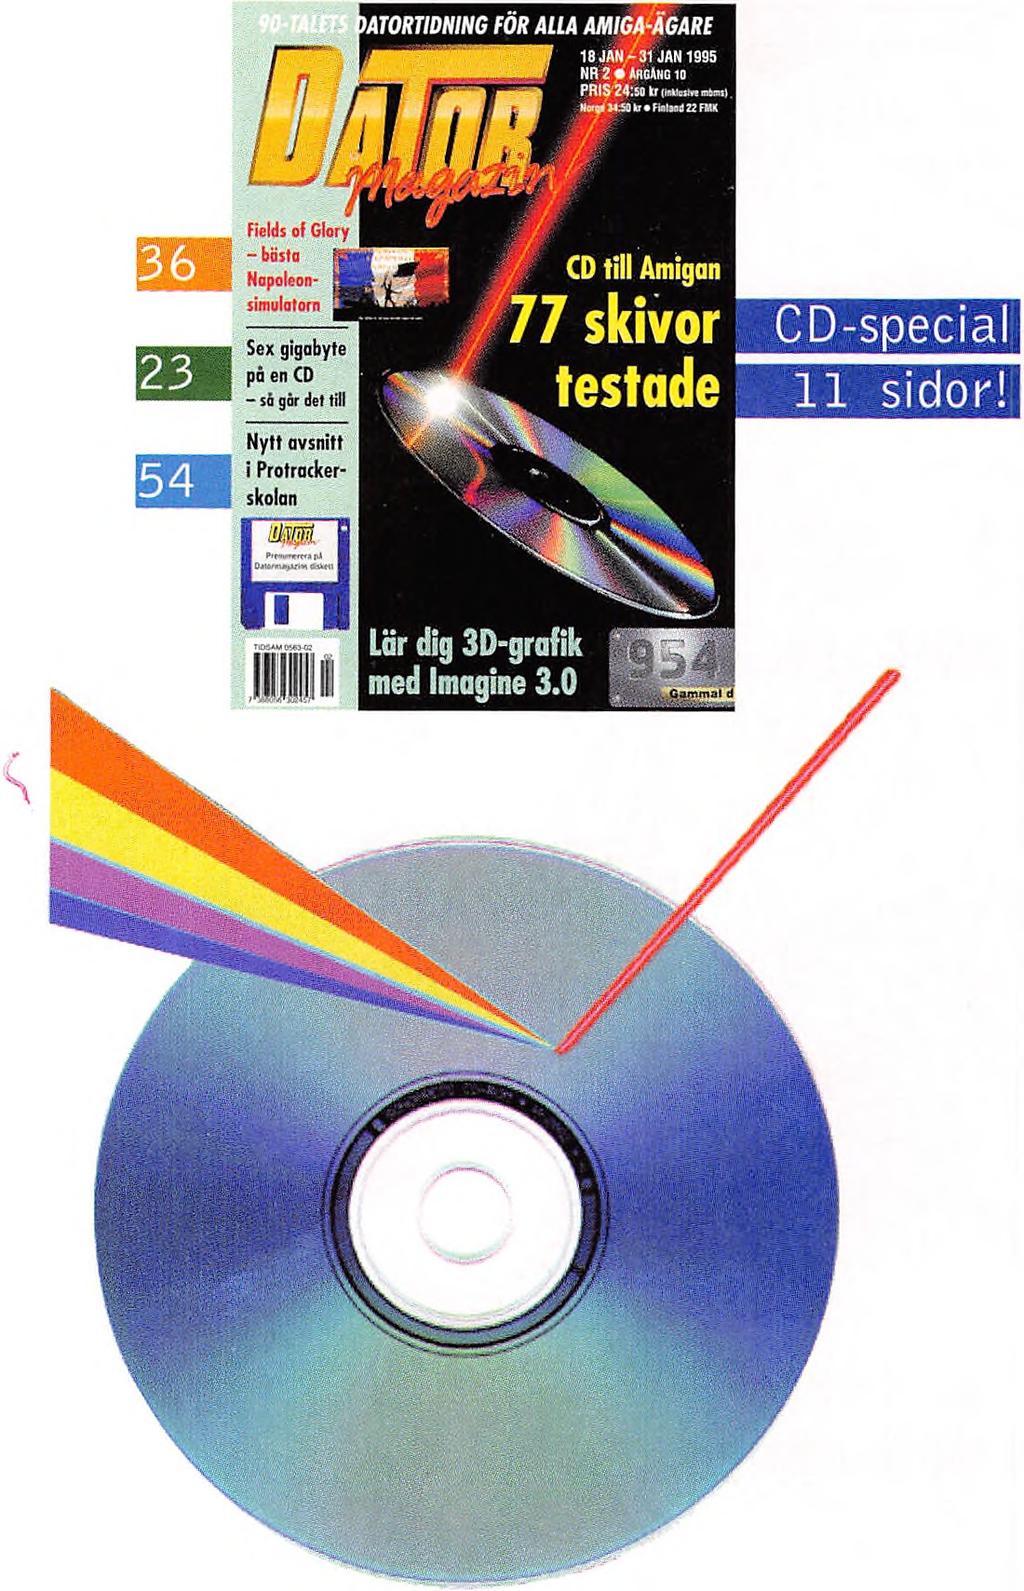 Det svåra valet 16 Hur vet du vilken CD-läsare som är bäst för dig? DMZ hjälper dig i valet. CD-skivor till Amigan 17 Fem sidor tester och recensioner av CD-skivor till Amiga.